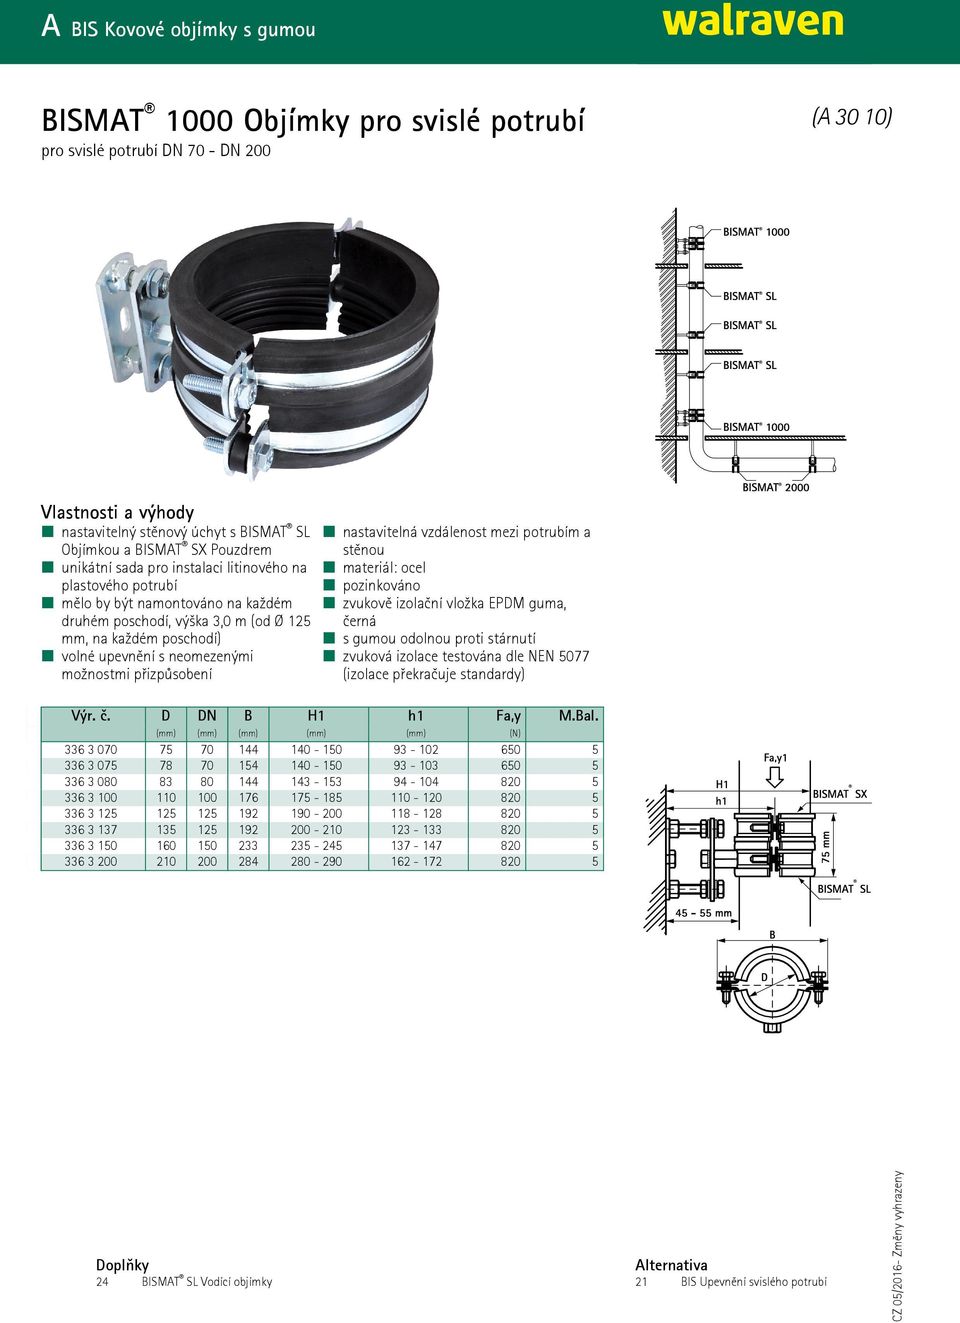 potrubím a stěnou černá zvuková izolace testována dle NEN 5077 (izolace překračuje standardy) Výr. č. D DN B H1 h1 Fa,y M.Bal.